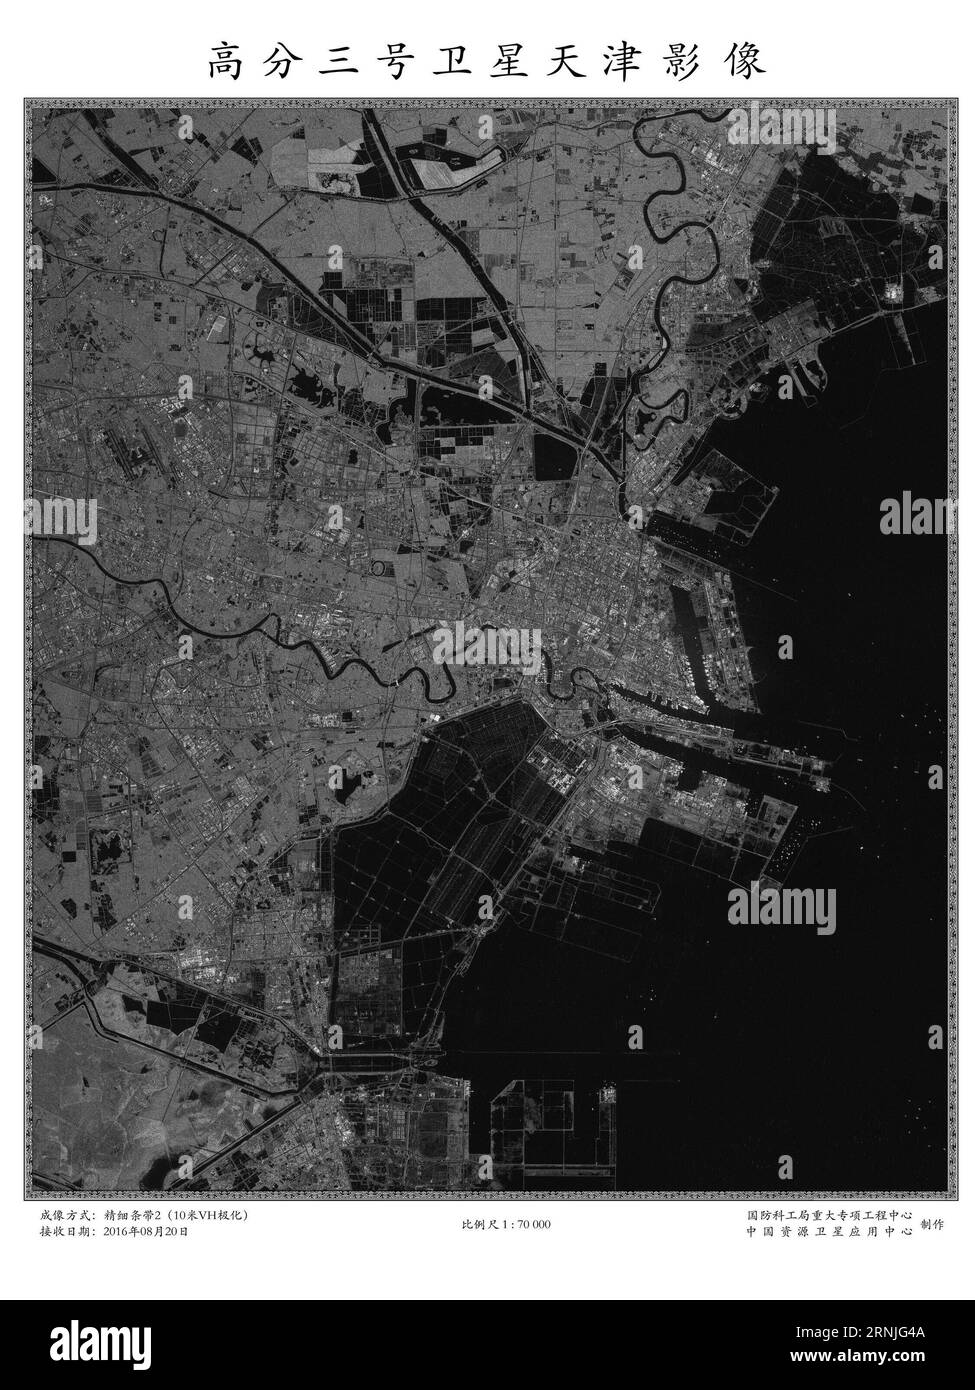 (170123) -- PEKING, 23. Januar 2017 () -- das veröffentlichte Foto zeigt das Bild der Stadt Tianjin in Nordchina, das am 20. August 2016 von Chinas erstem hochauflösenden SAR-Satelliten (Synthetic Aperture Radar) empfangen wurde. Chinas erster hochauflösender SAR-Satellit (Synthetic Aperture Radar) hat alle in-Orbit-Tests bestanden und ist nun in Betrieb, so die staatliche Verwaltung für Wissenschaft, Technologie und Industrie für nationale Verteidigung am Montag. Der auf einen Meter genaue Gaofen-3-Satellit wurde im August 2016 gestartet. (/State Administration of Science, Technology and Ind Stockfoto